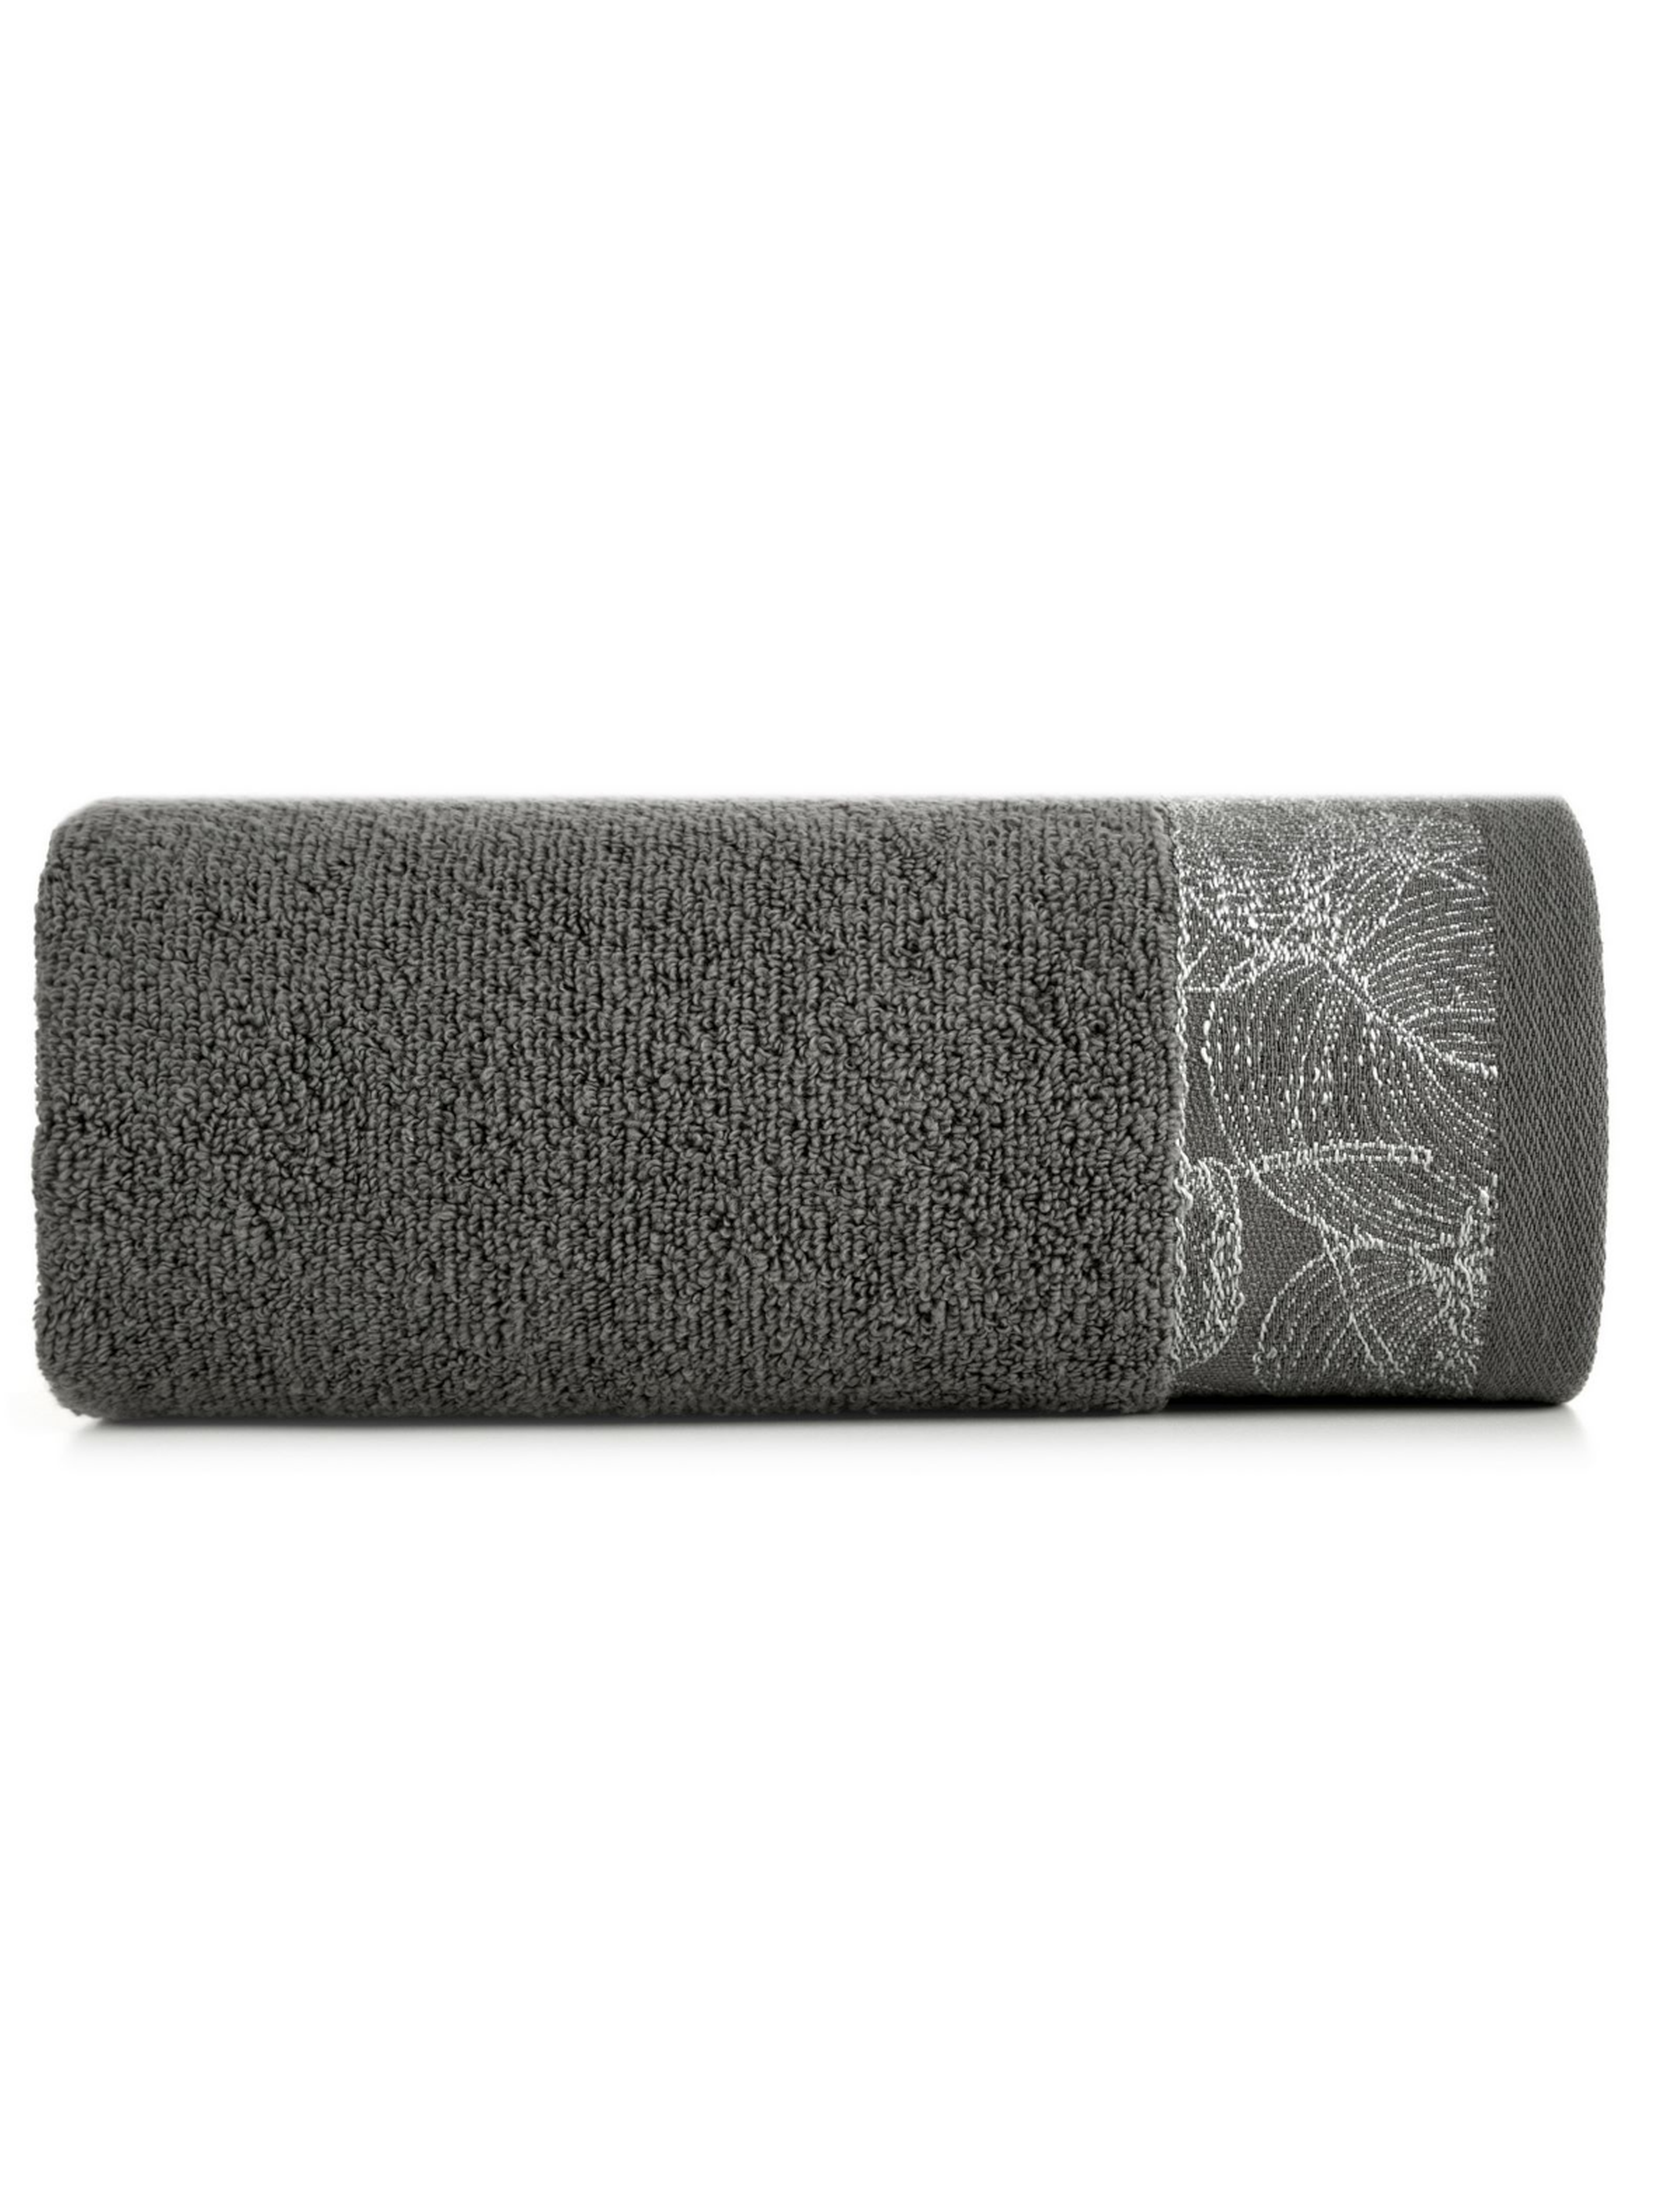 Szary ręcznik ze zdobieniem 70x140 cm